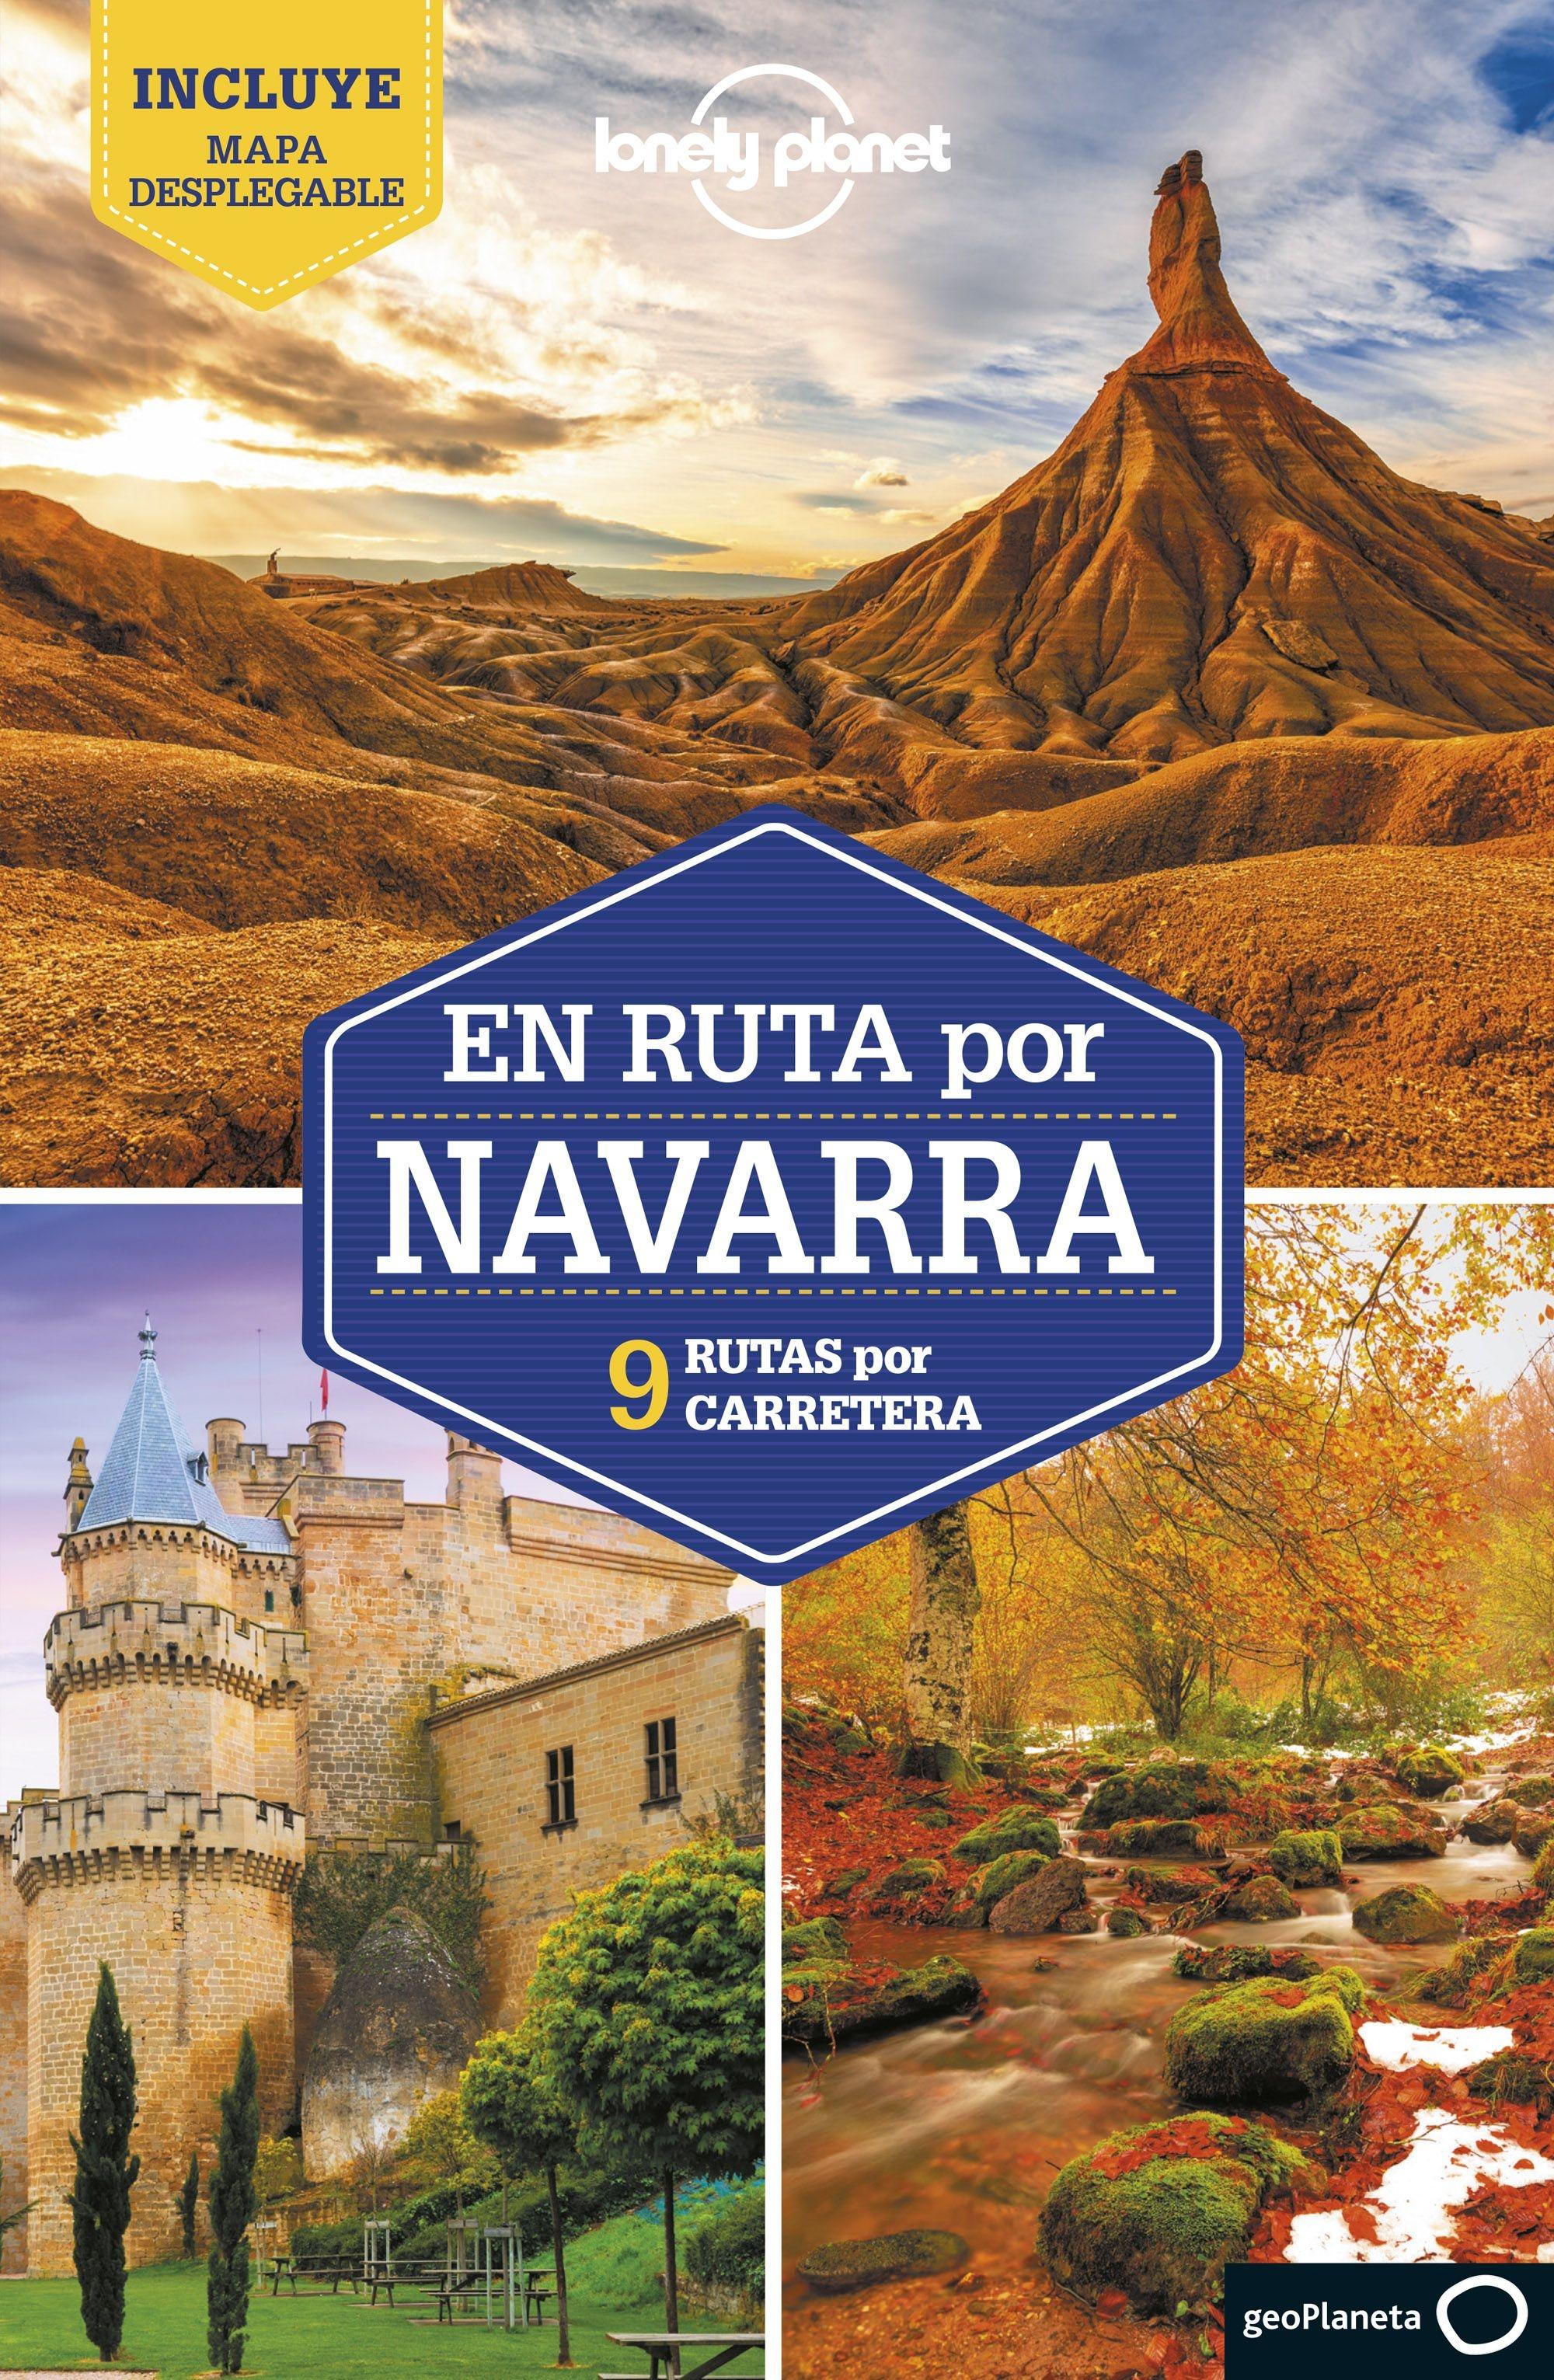 En ruta por Navarra  "Lonely Planet. 9 Rutas por carretera"